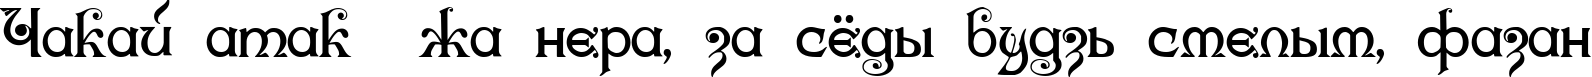 Пример написания шрифтом Karnac One текста на белорусском